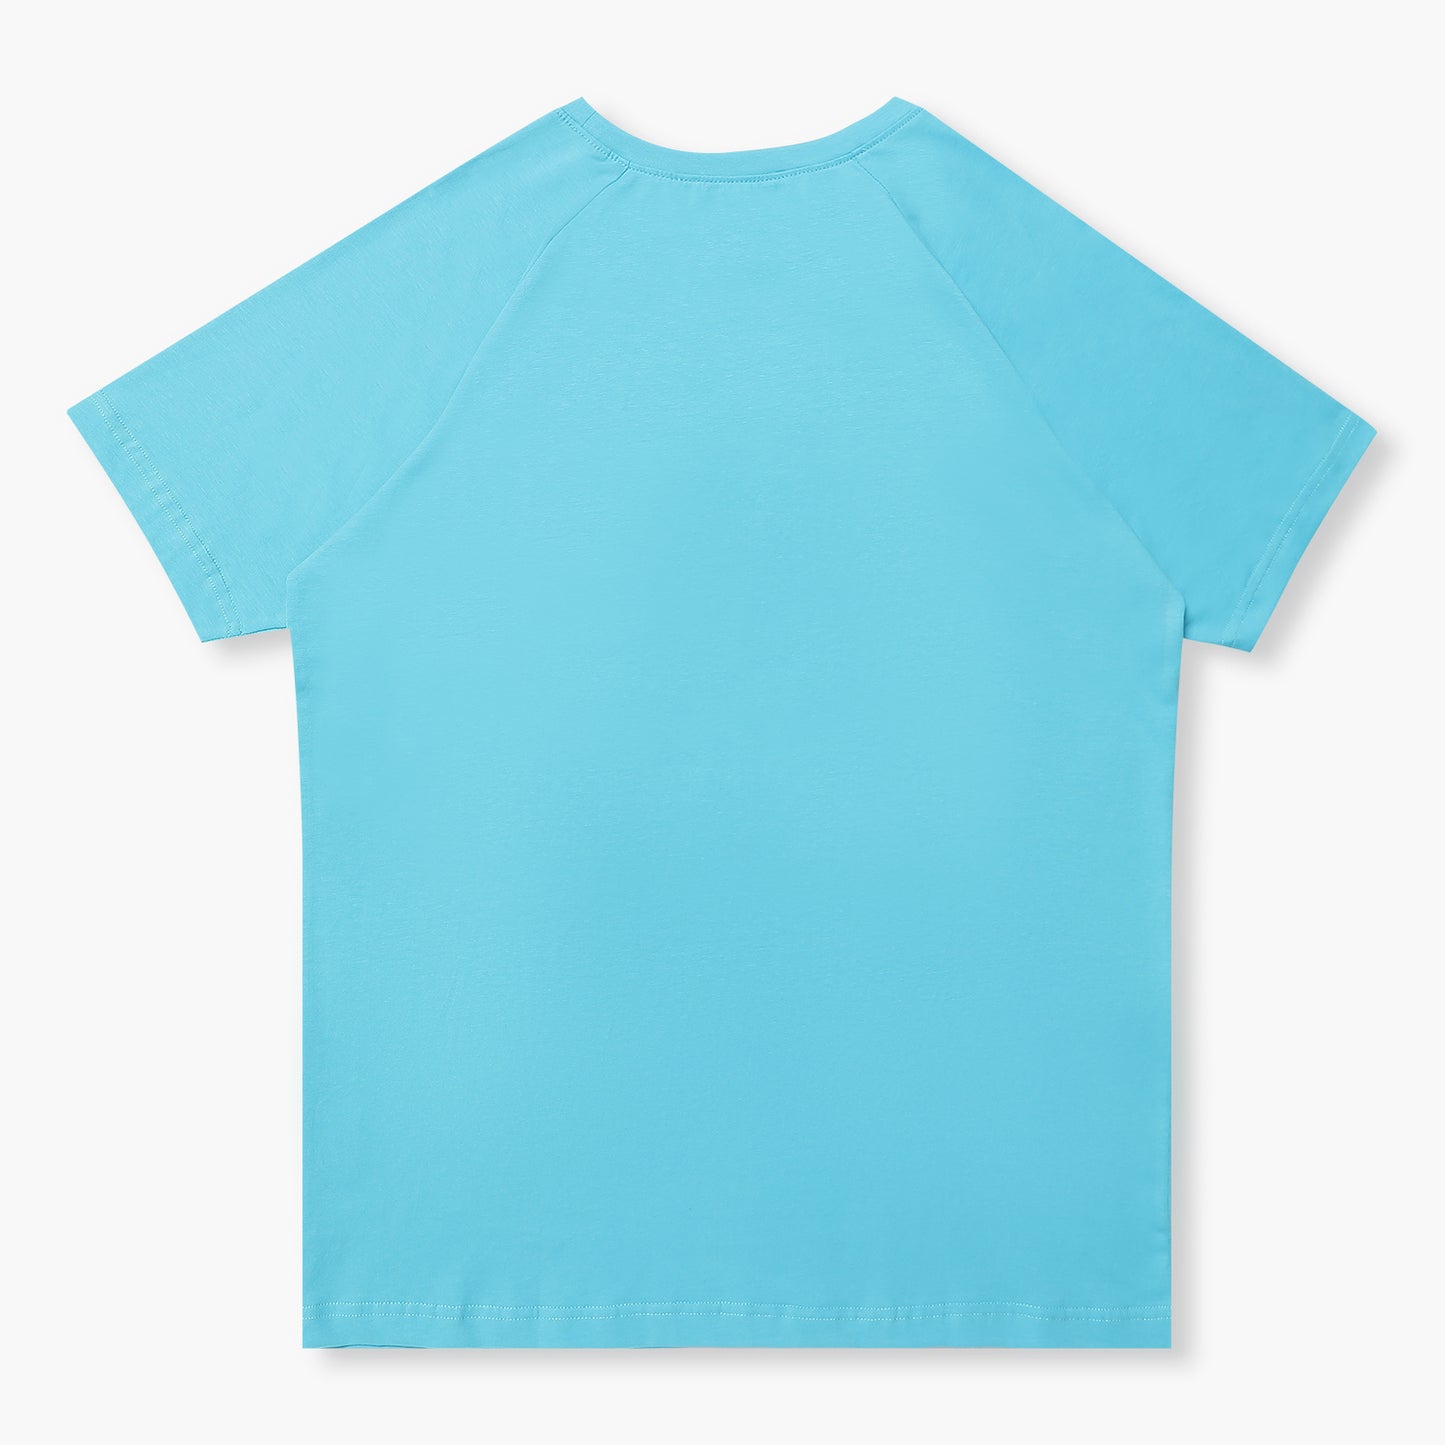 Arachion Phoenix Slim Fit T-shirt | Azure Blue